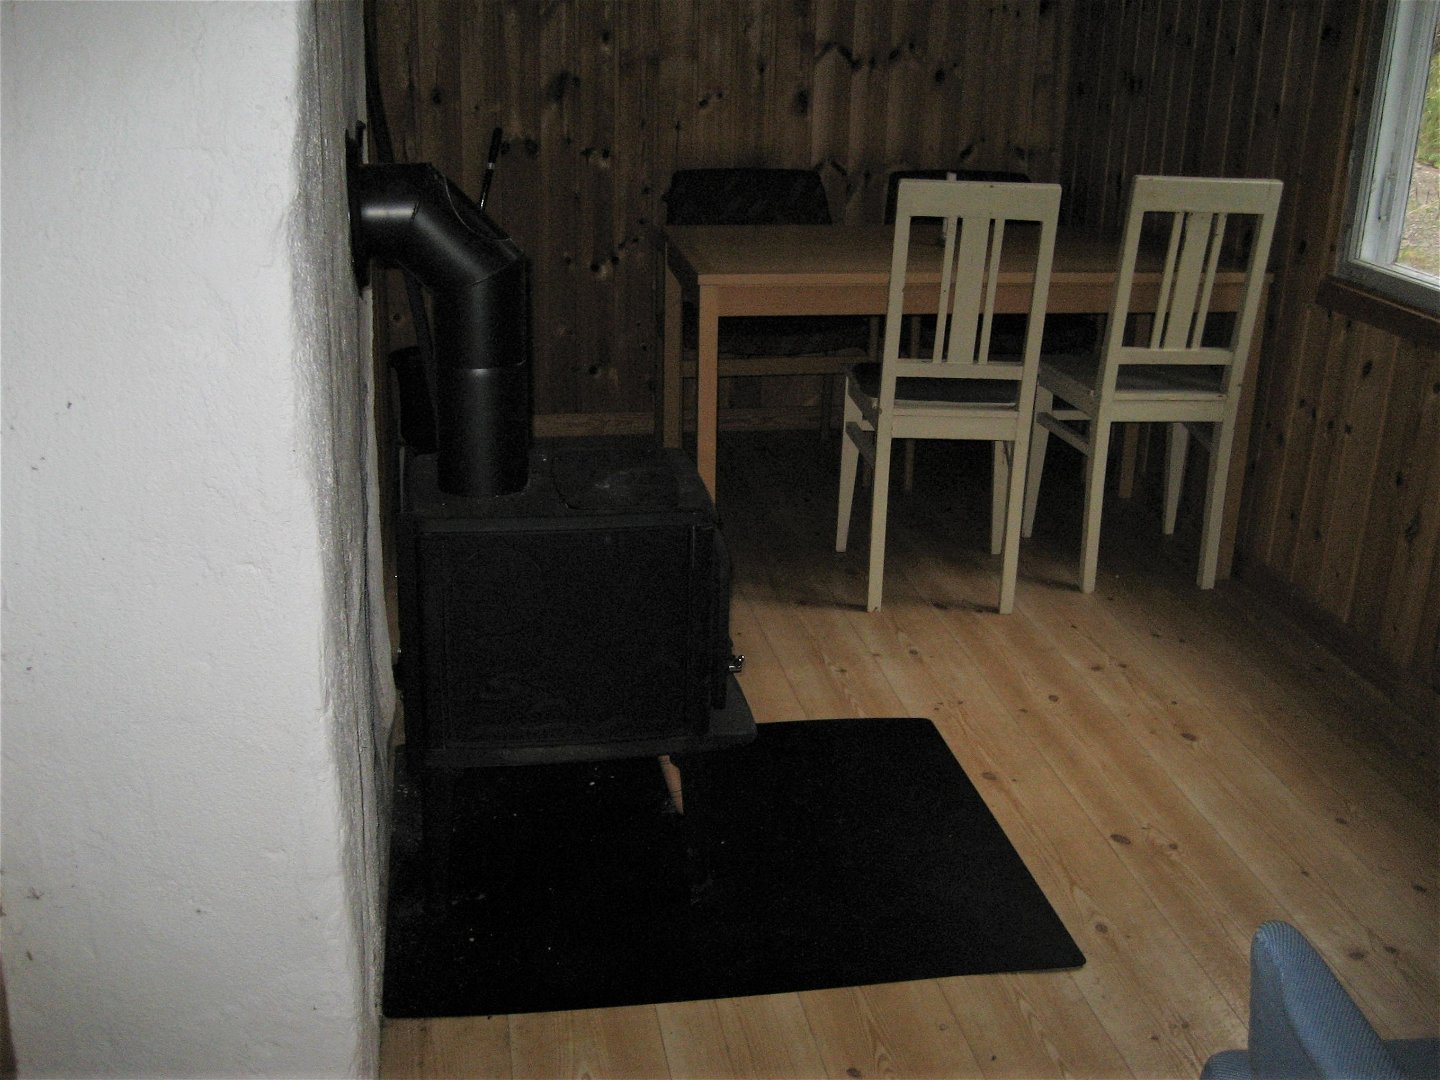 Vit murstock och kamin till vänster. Längst in i rummet står ett bord med fyra stolar.